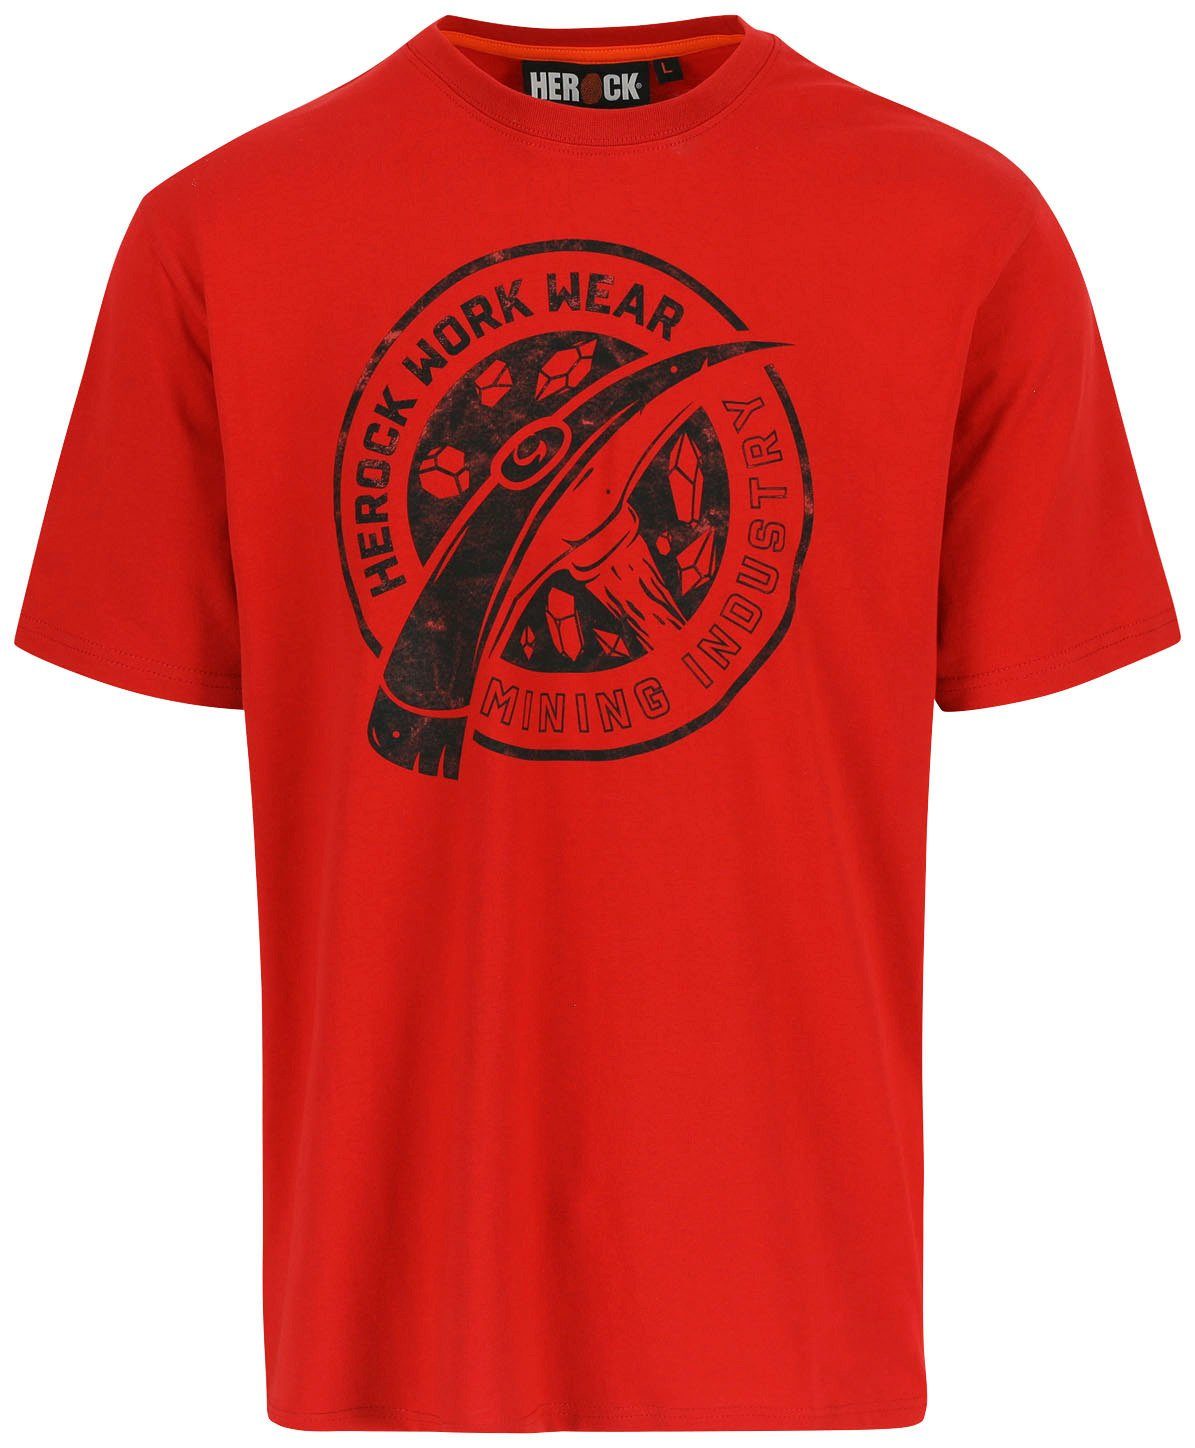 Herock T-Shirt Worker Limited Edition, in verschiedene Farben erhältlich